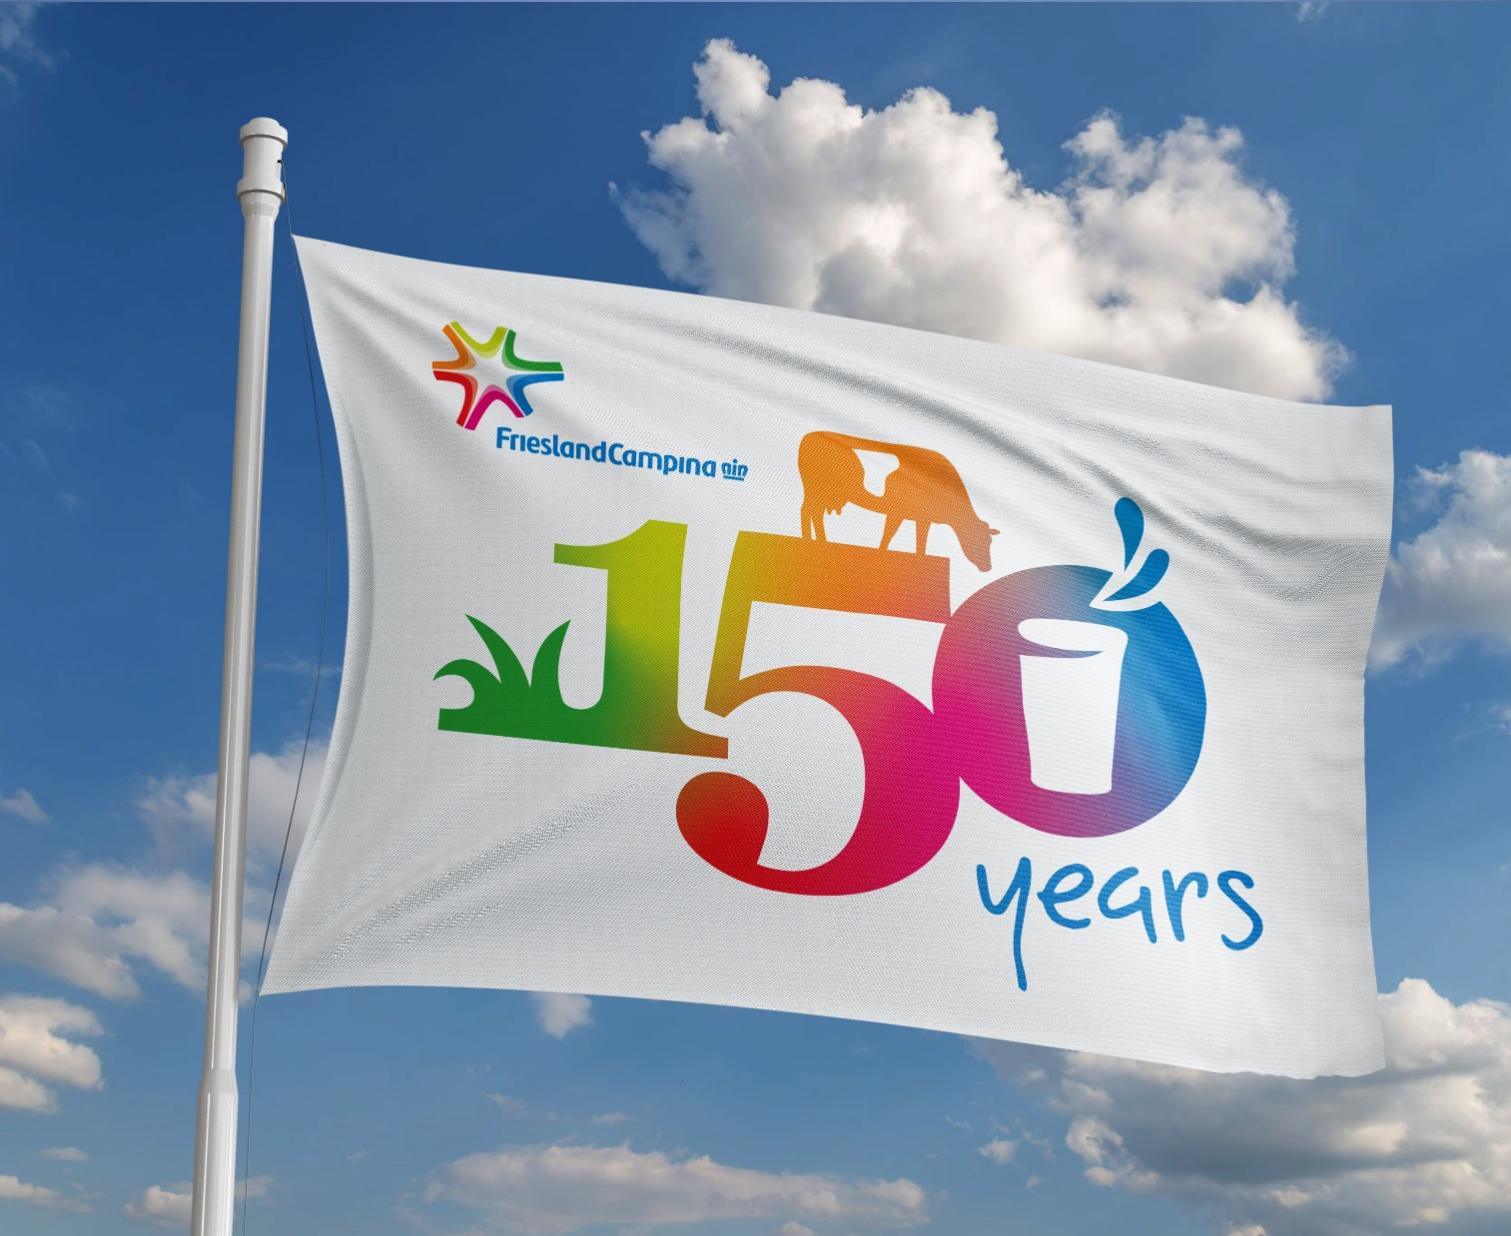 Tập đoàn FrieslandCampina ghi dấu ấn 150 năm với vị trí Top 3 trong Sáng kiến Tiếp cận Dinh dưỡng toàn cầu - Ảnh 1